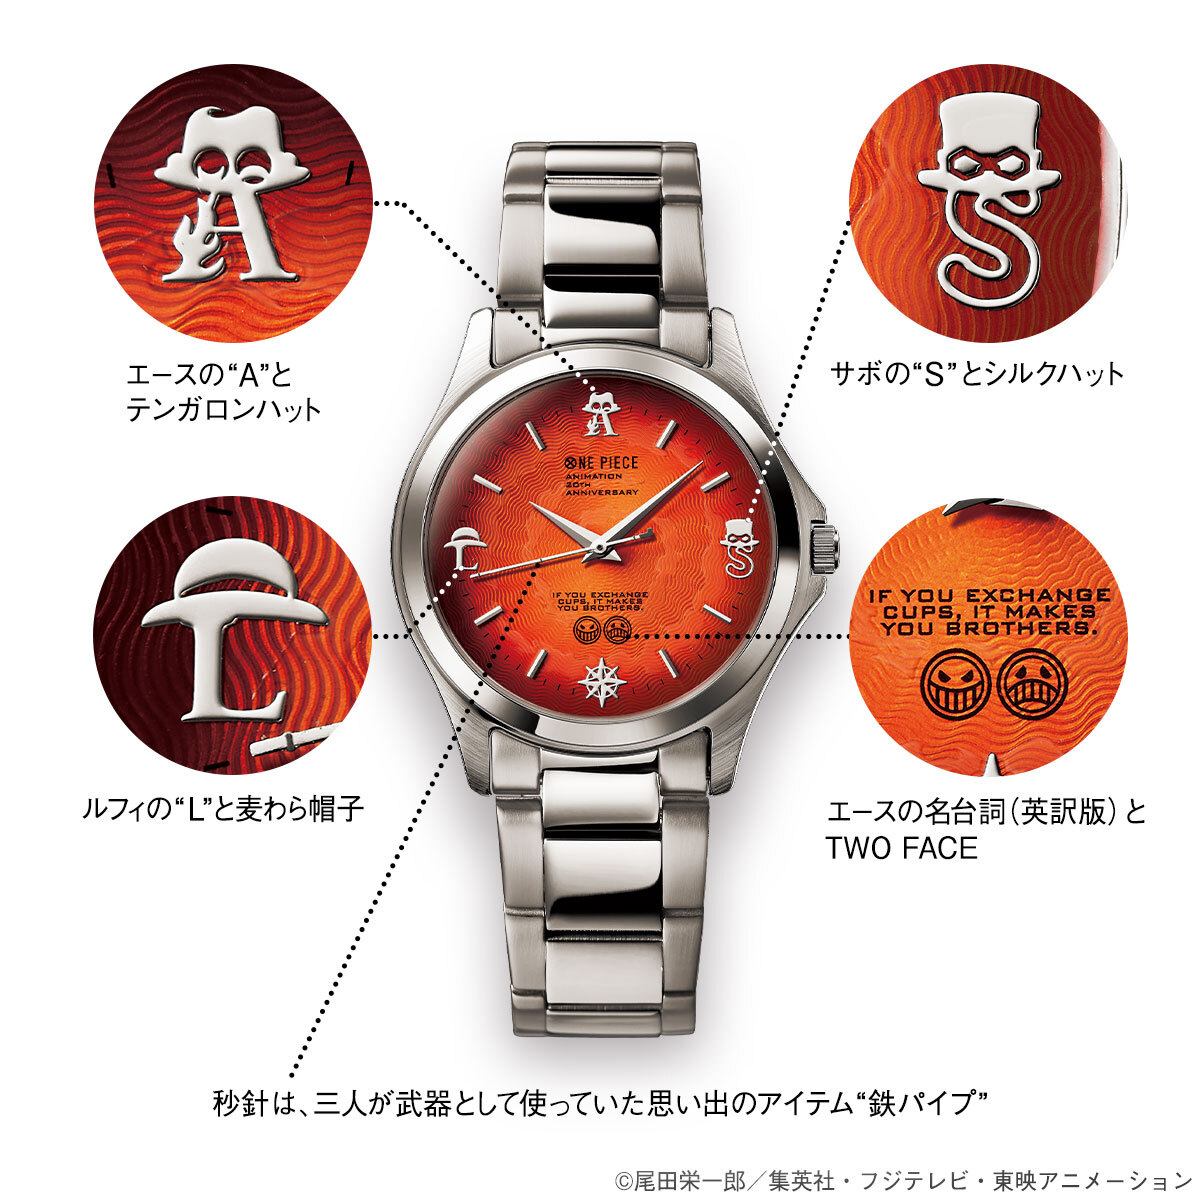 時をこえても変わらない絆と 受け継がれる炎の意志 One Piece からエース サボ ルフィ 三兄弟の絆をイメージした腕時計が登場 インペリアル エンタープライズ株式会社のプレスリリース